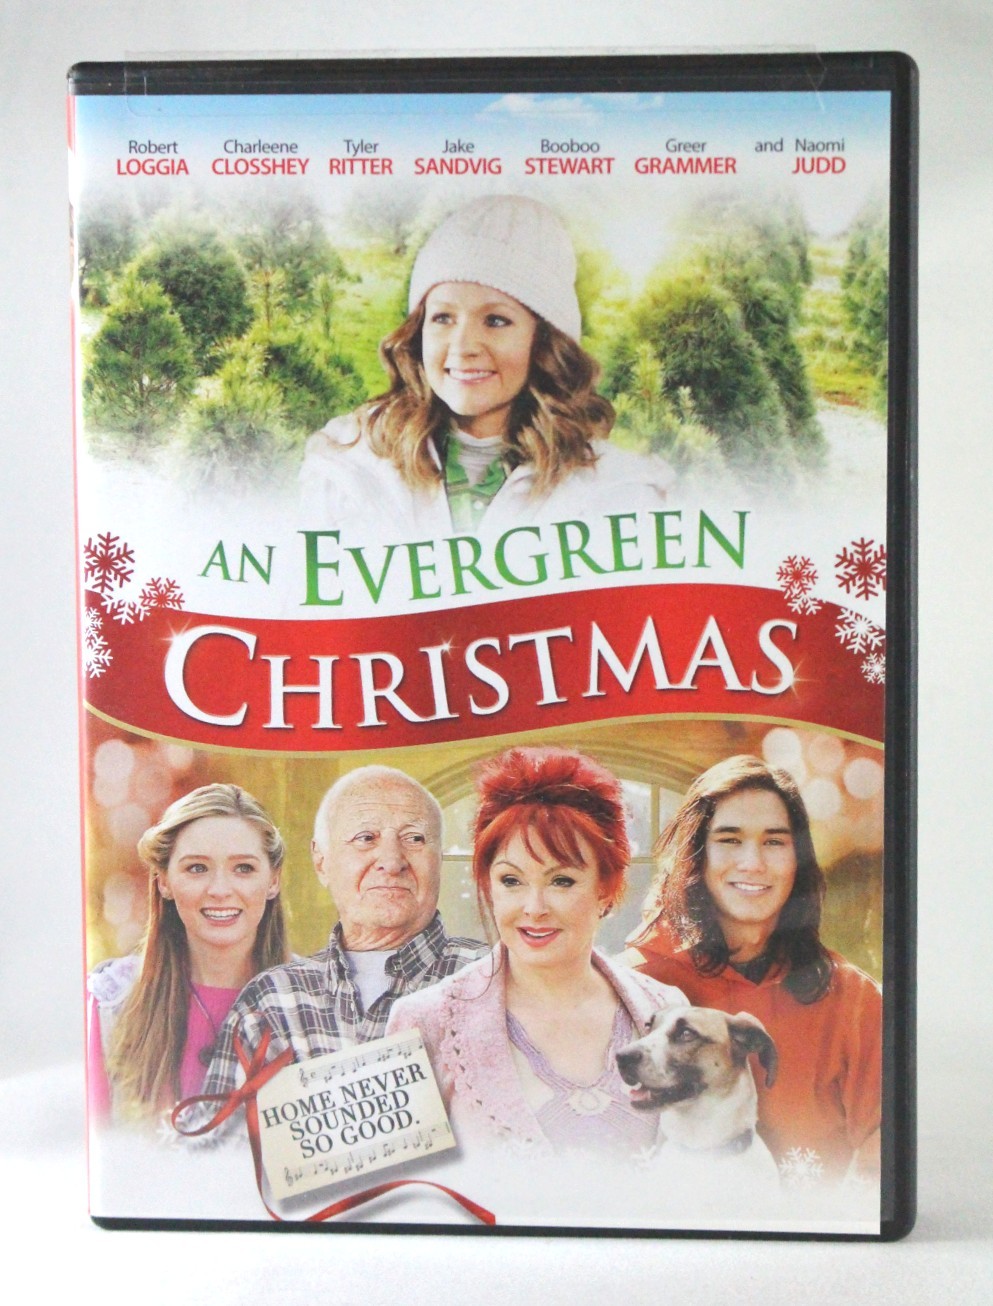 Naomi Judd – DVD “An Evergreen Christmas” PV